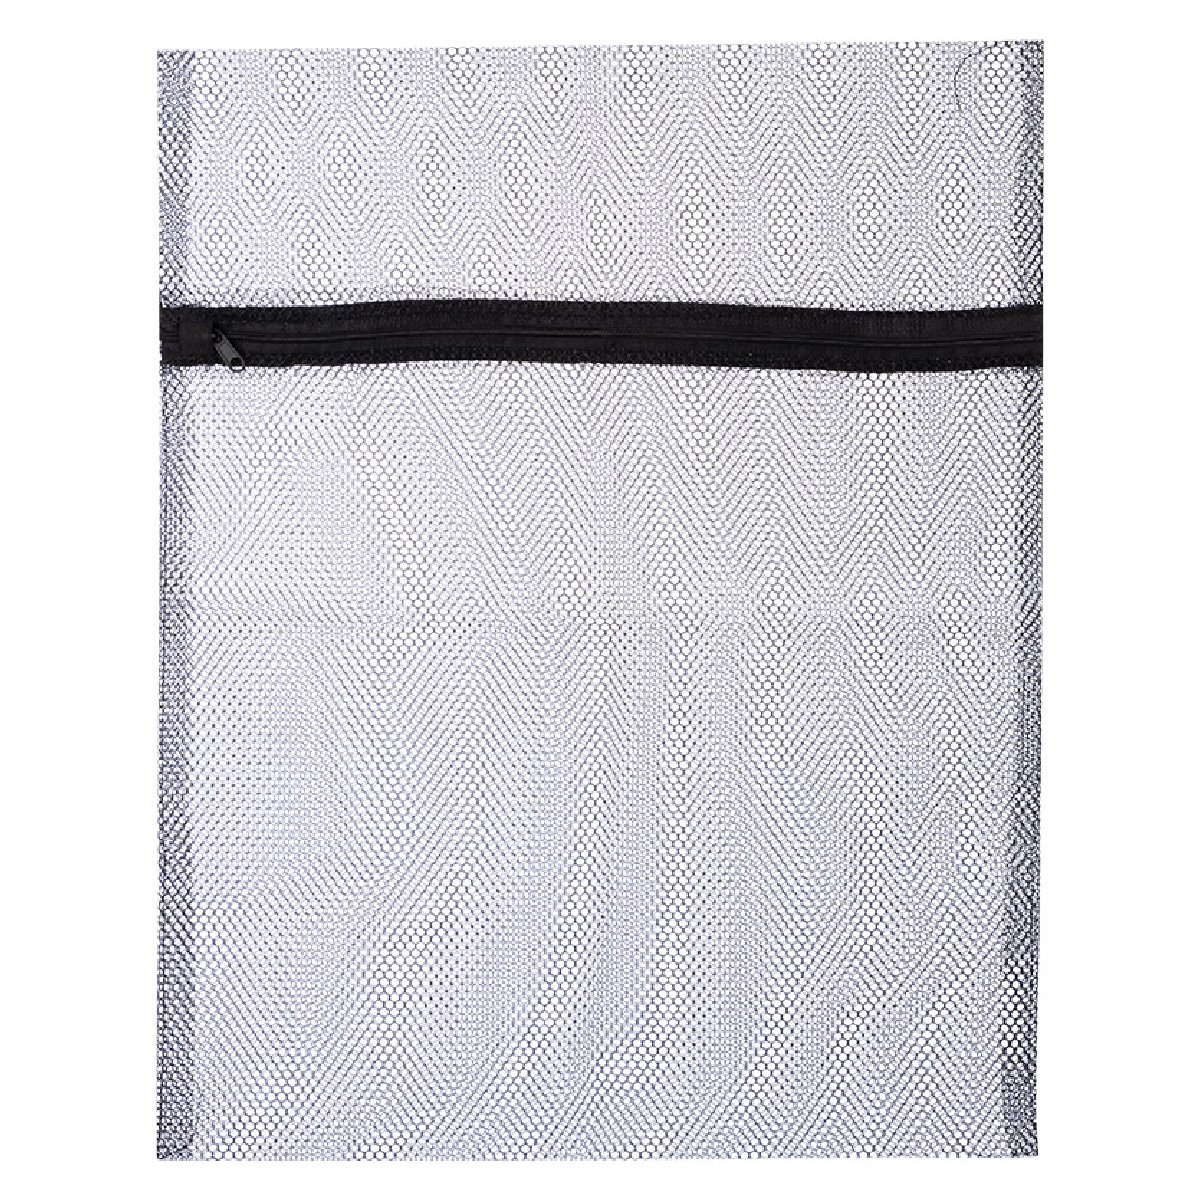 Мешок для стирки белья, 40x50, цвет черный (311129)Купить